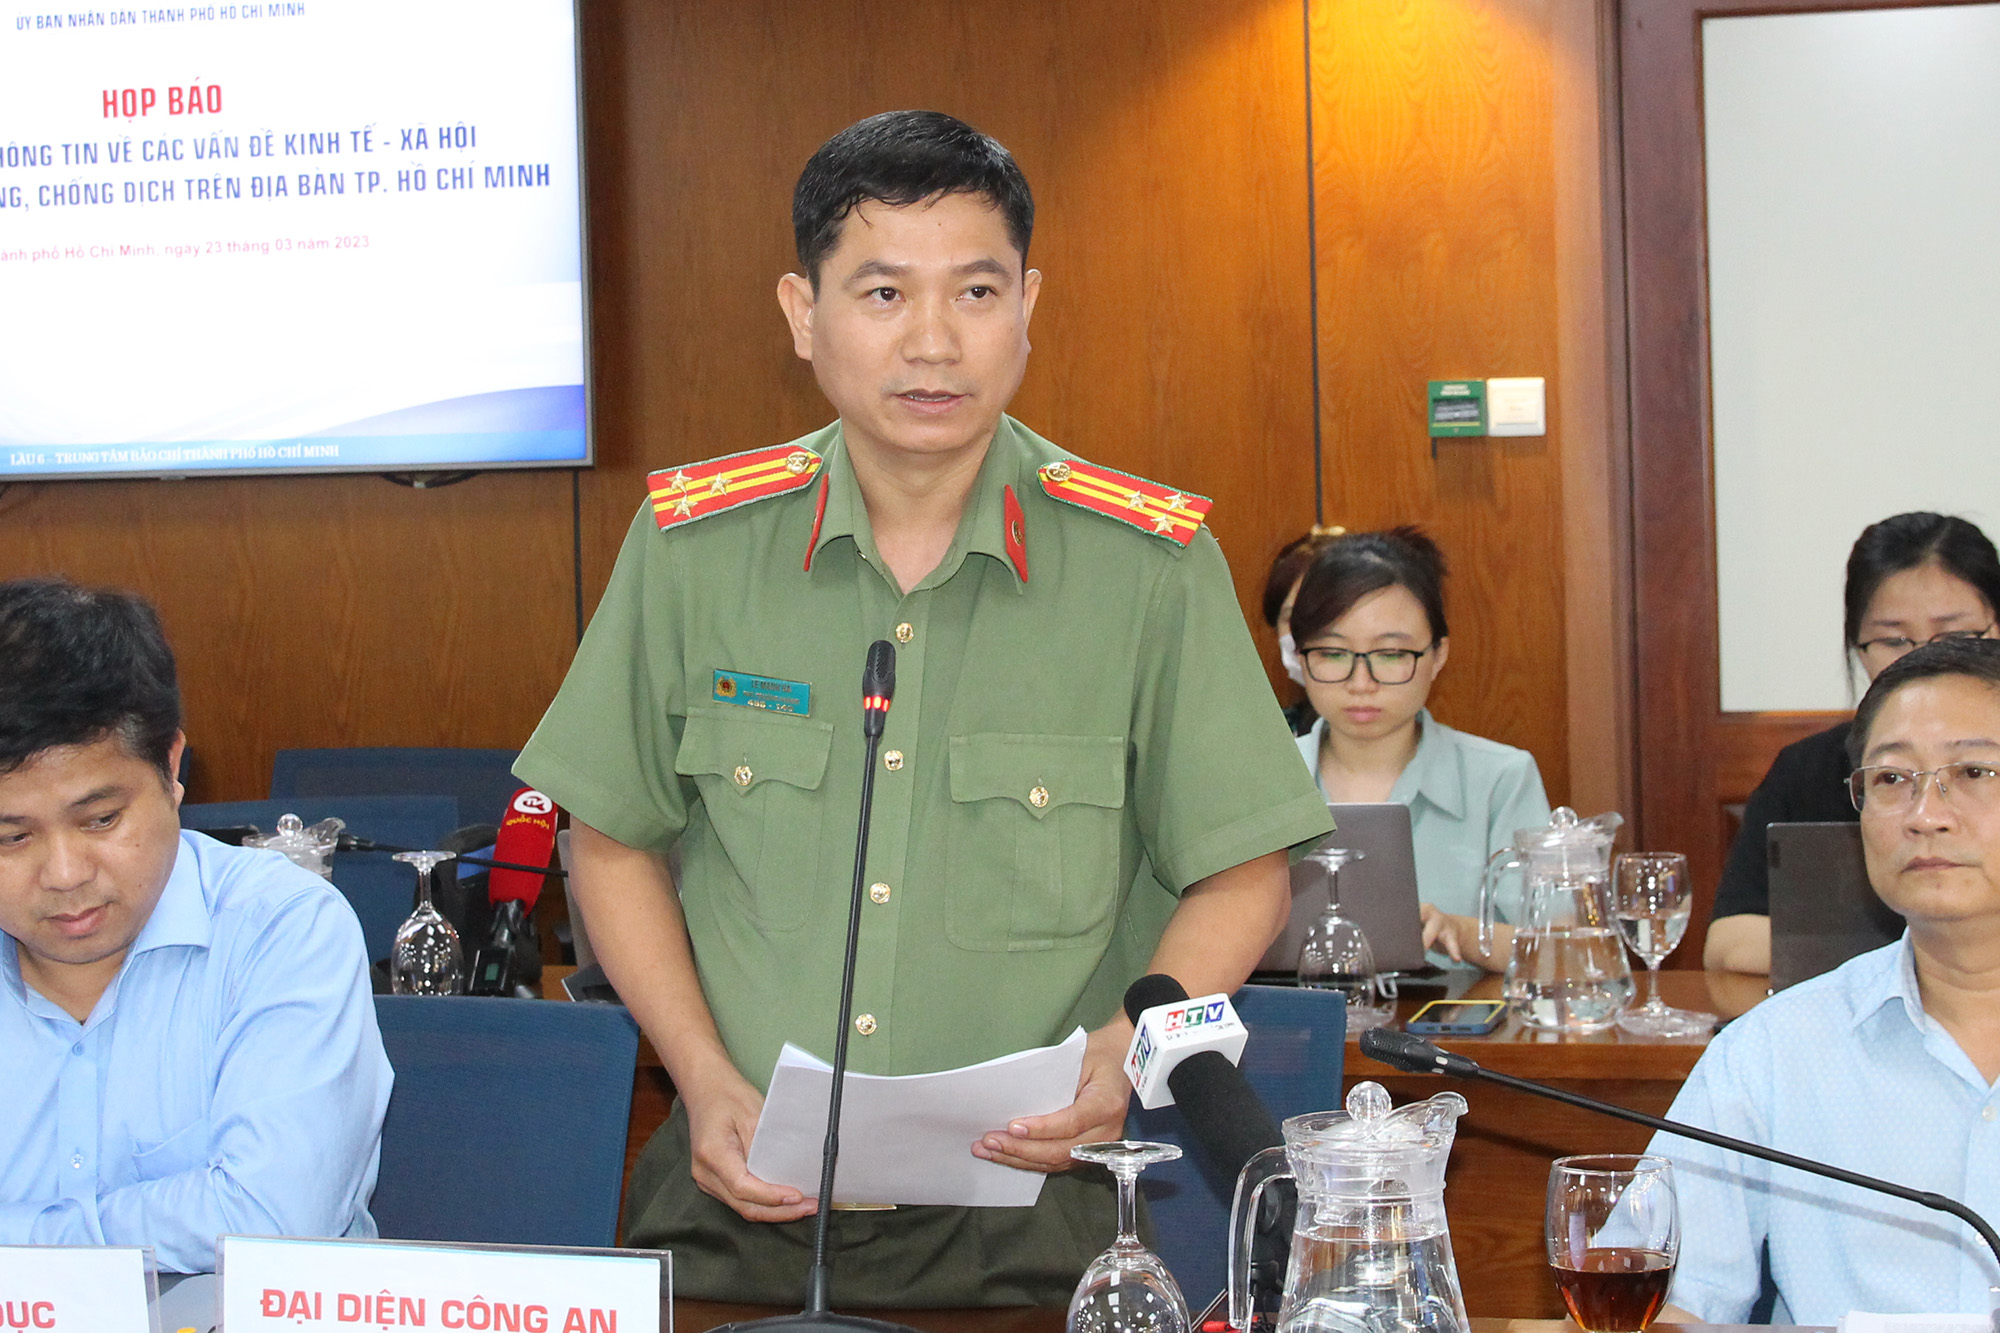 Thượng tá Lê Mạnh Hà - Phó Trưởng phòng tham mưu Công an TP. Hồ Chí Minh trả lời báo chí tại buổi họp báp (Ảnh: H.Hào).